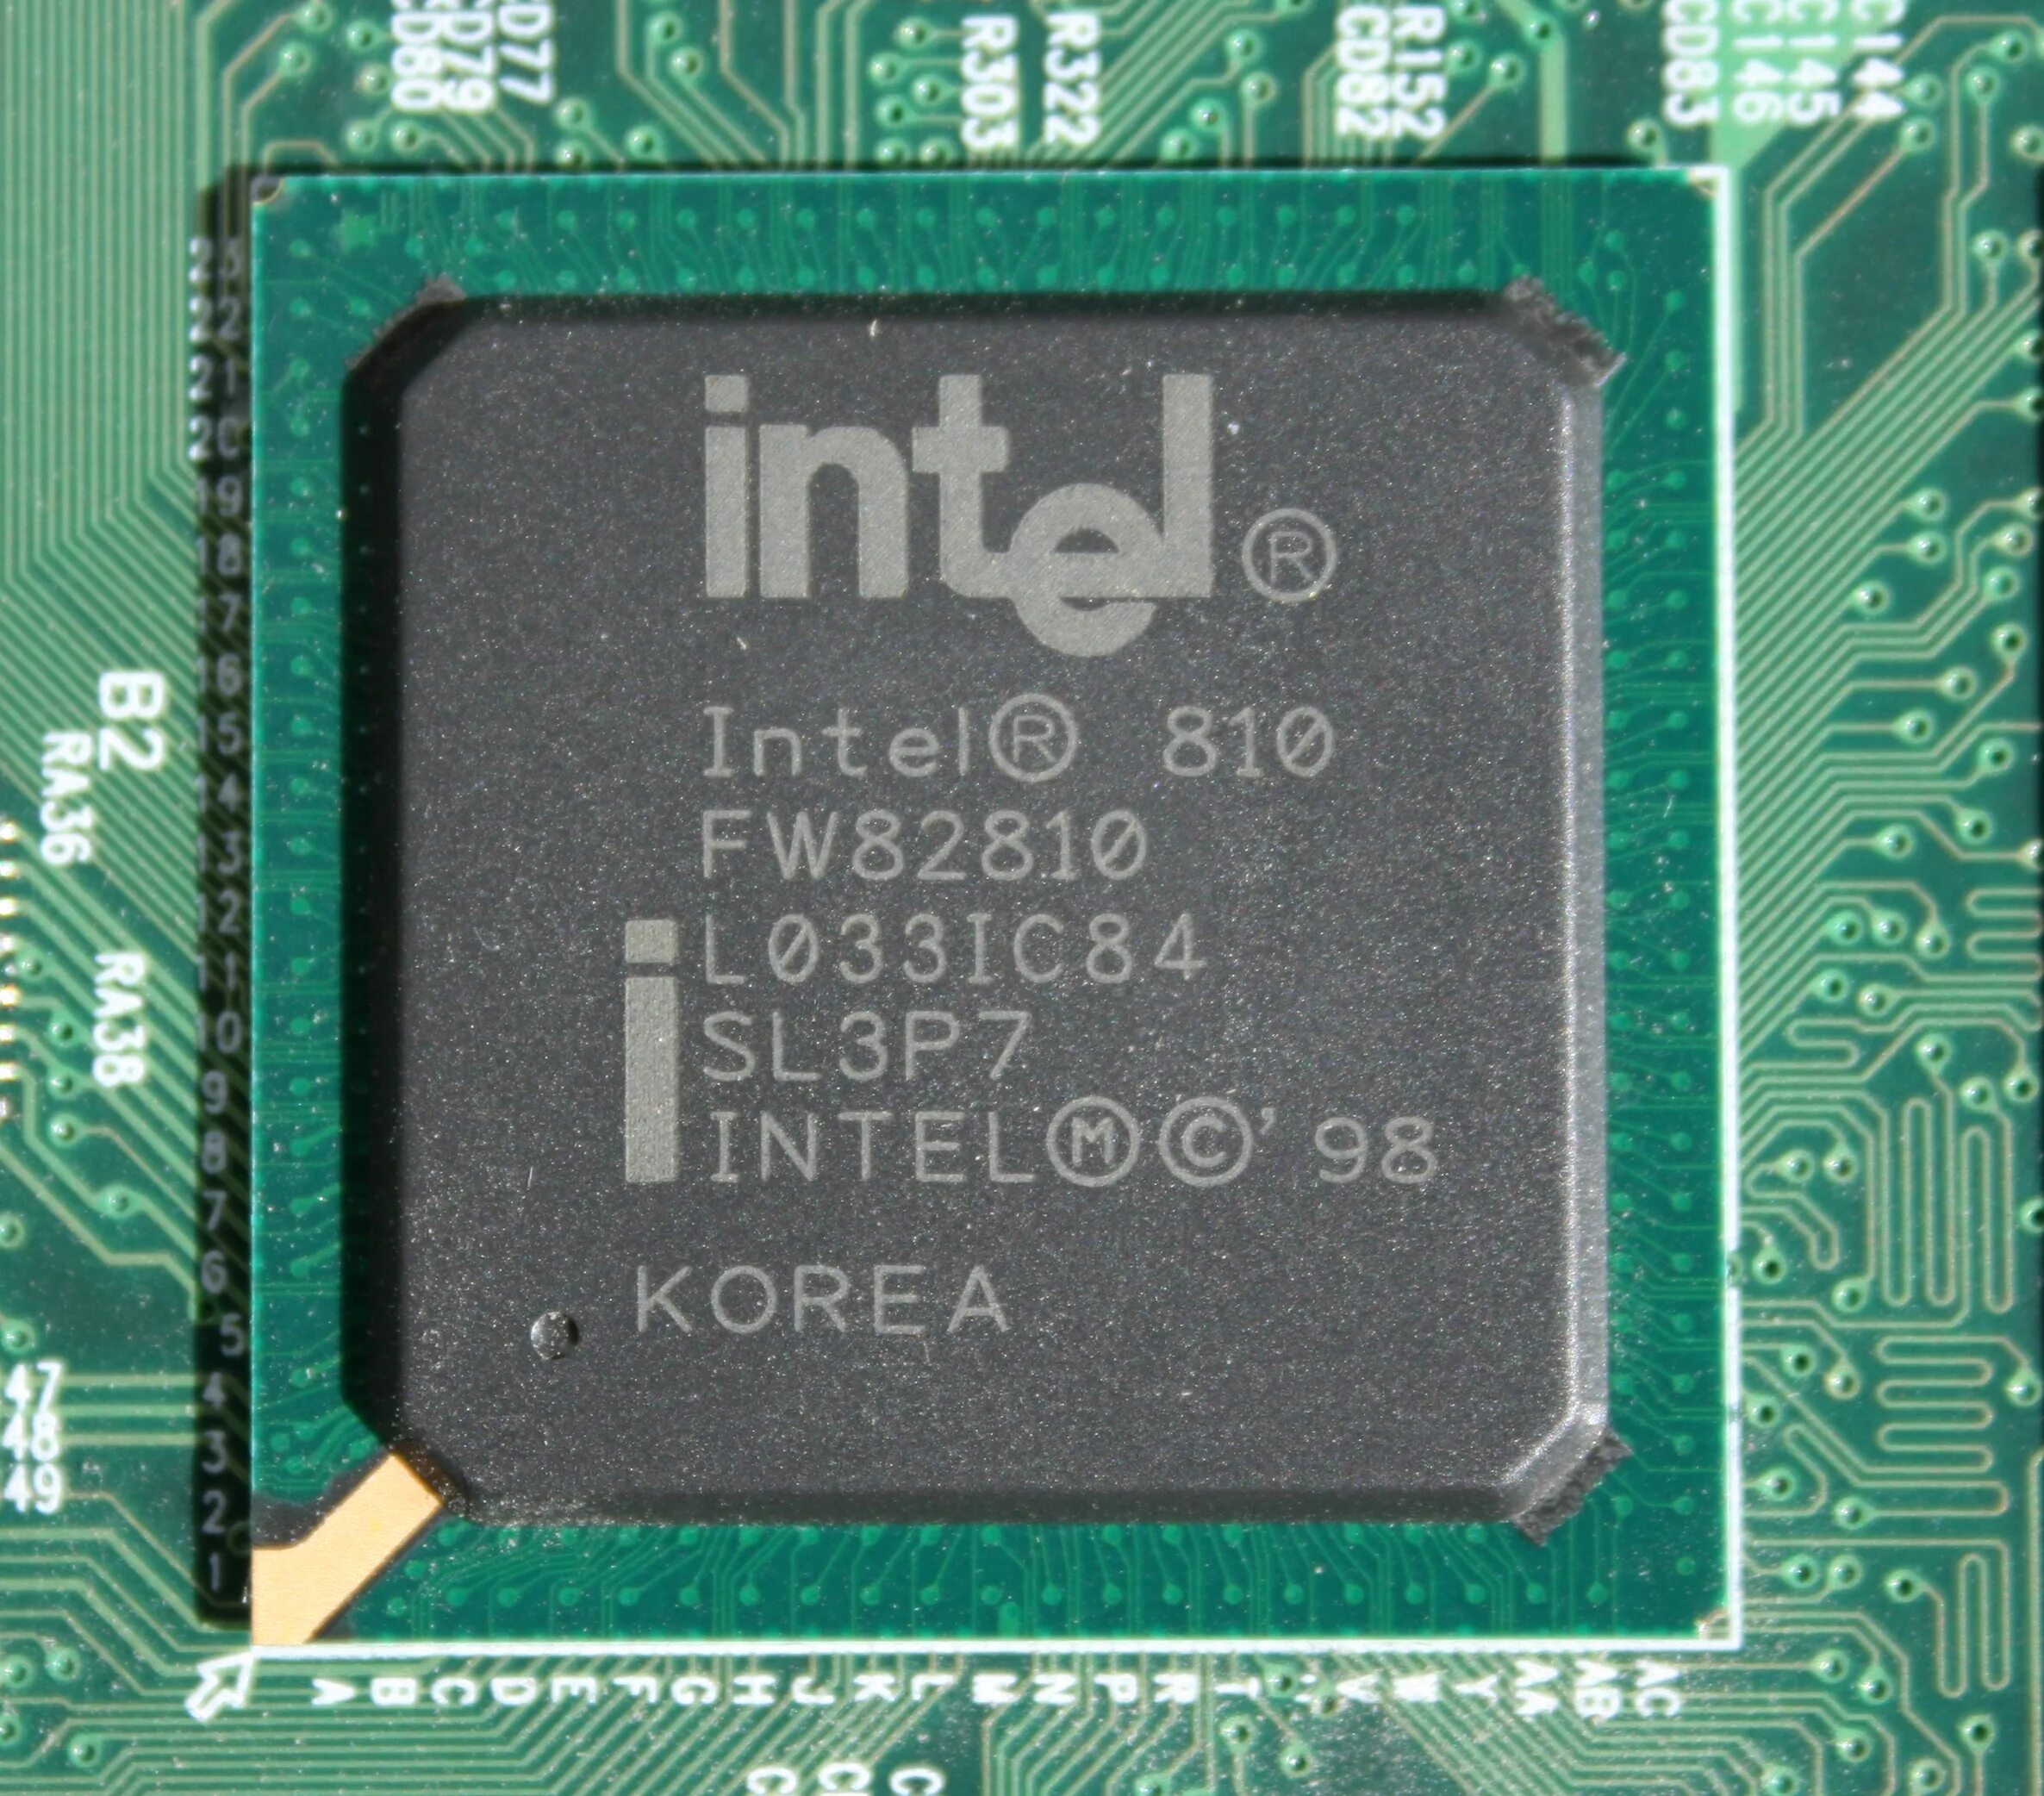 Интел 310 чипсет. Intel Celeron чипсет. Intel i740. Intel 810.